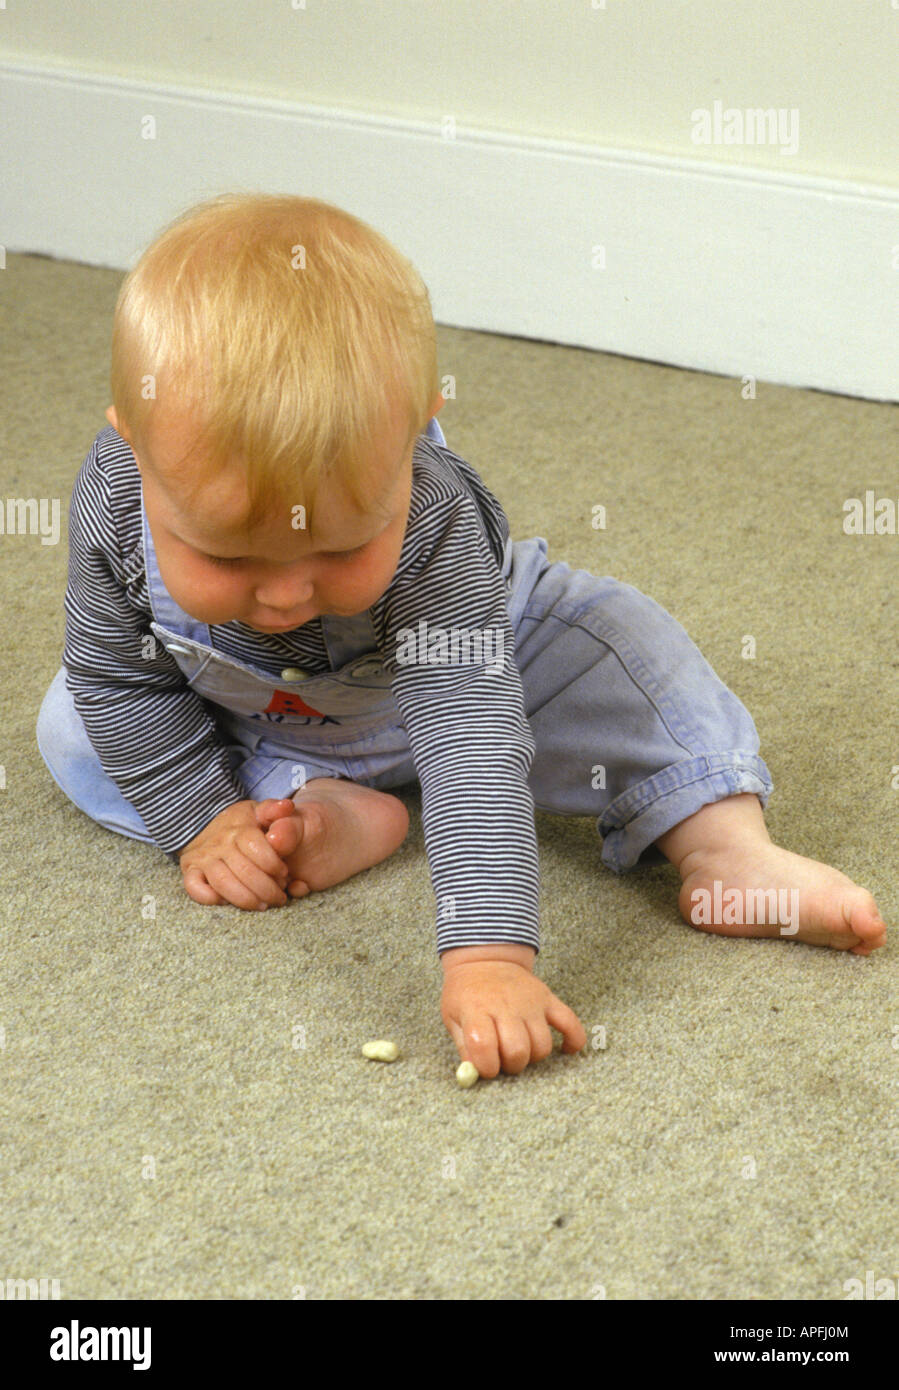 Baby-Abholung Objekt auf Teppich Stockfoto